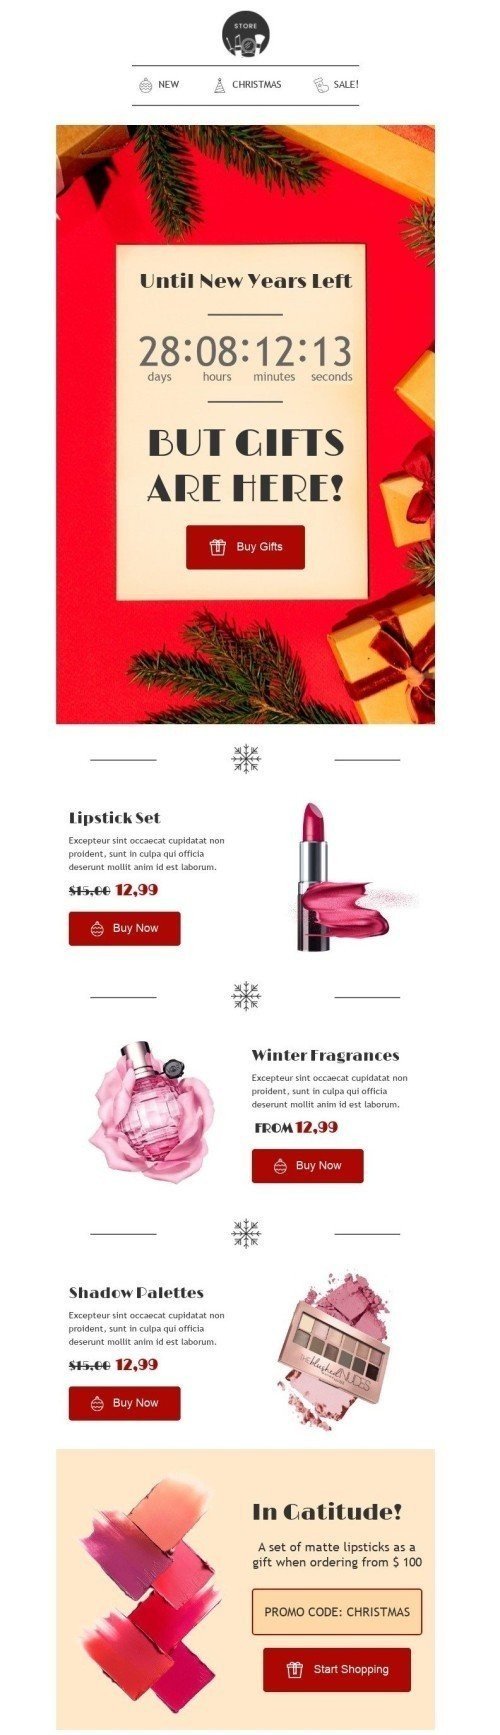 Plantilla de correo electrónico «Los regalos están aquí» de Navidad para la industria de Belleza y cuidado personal Vista de móvil